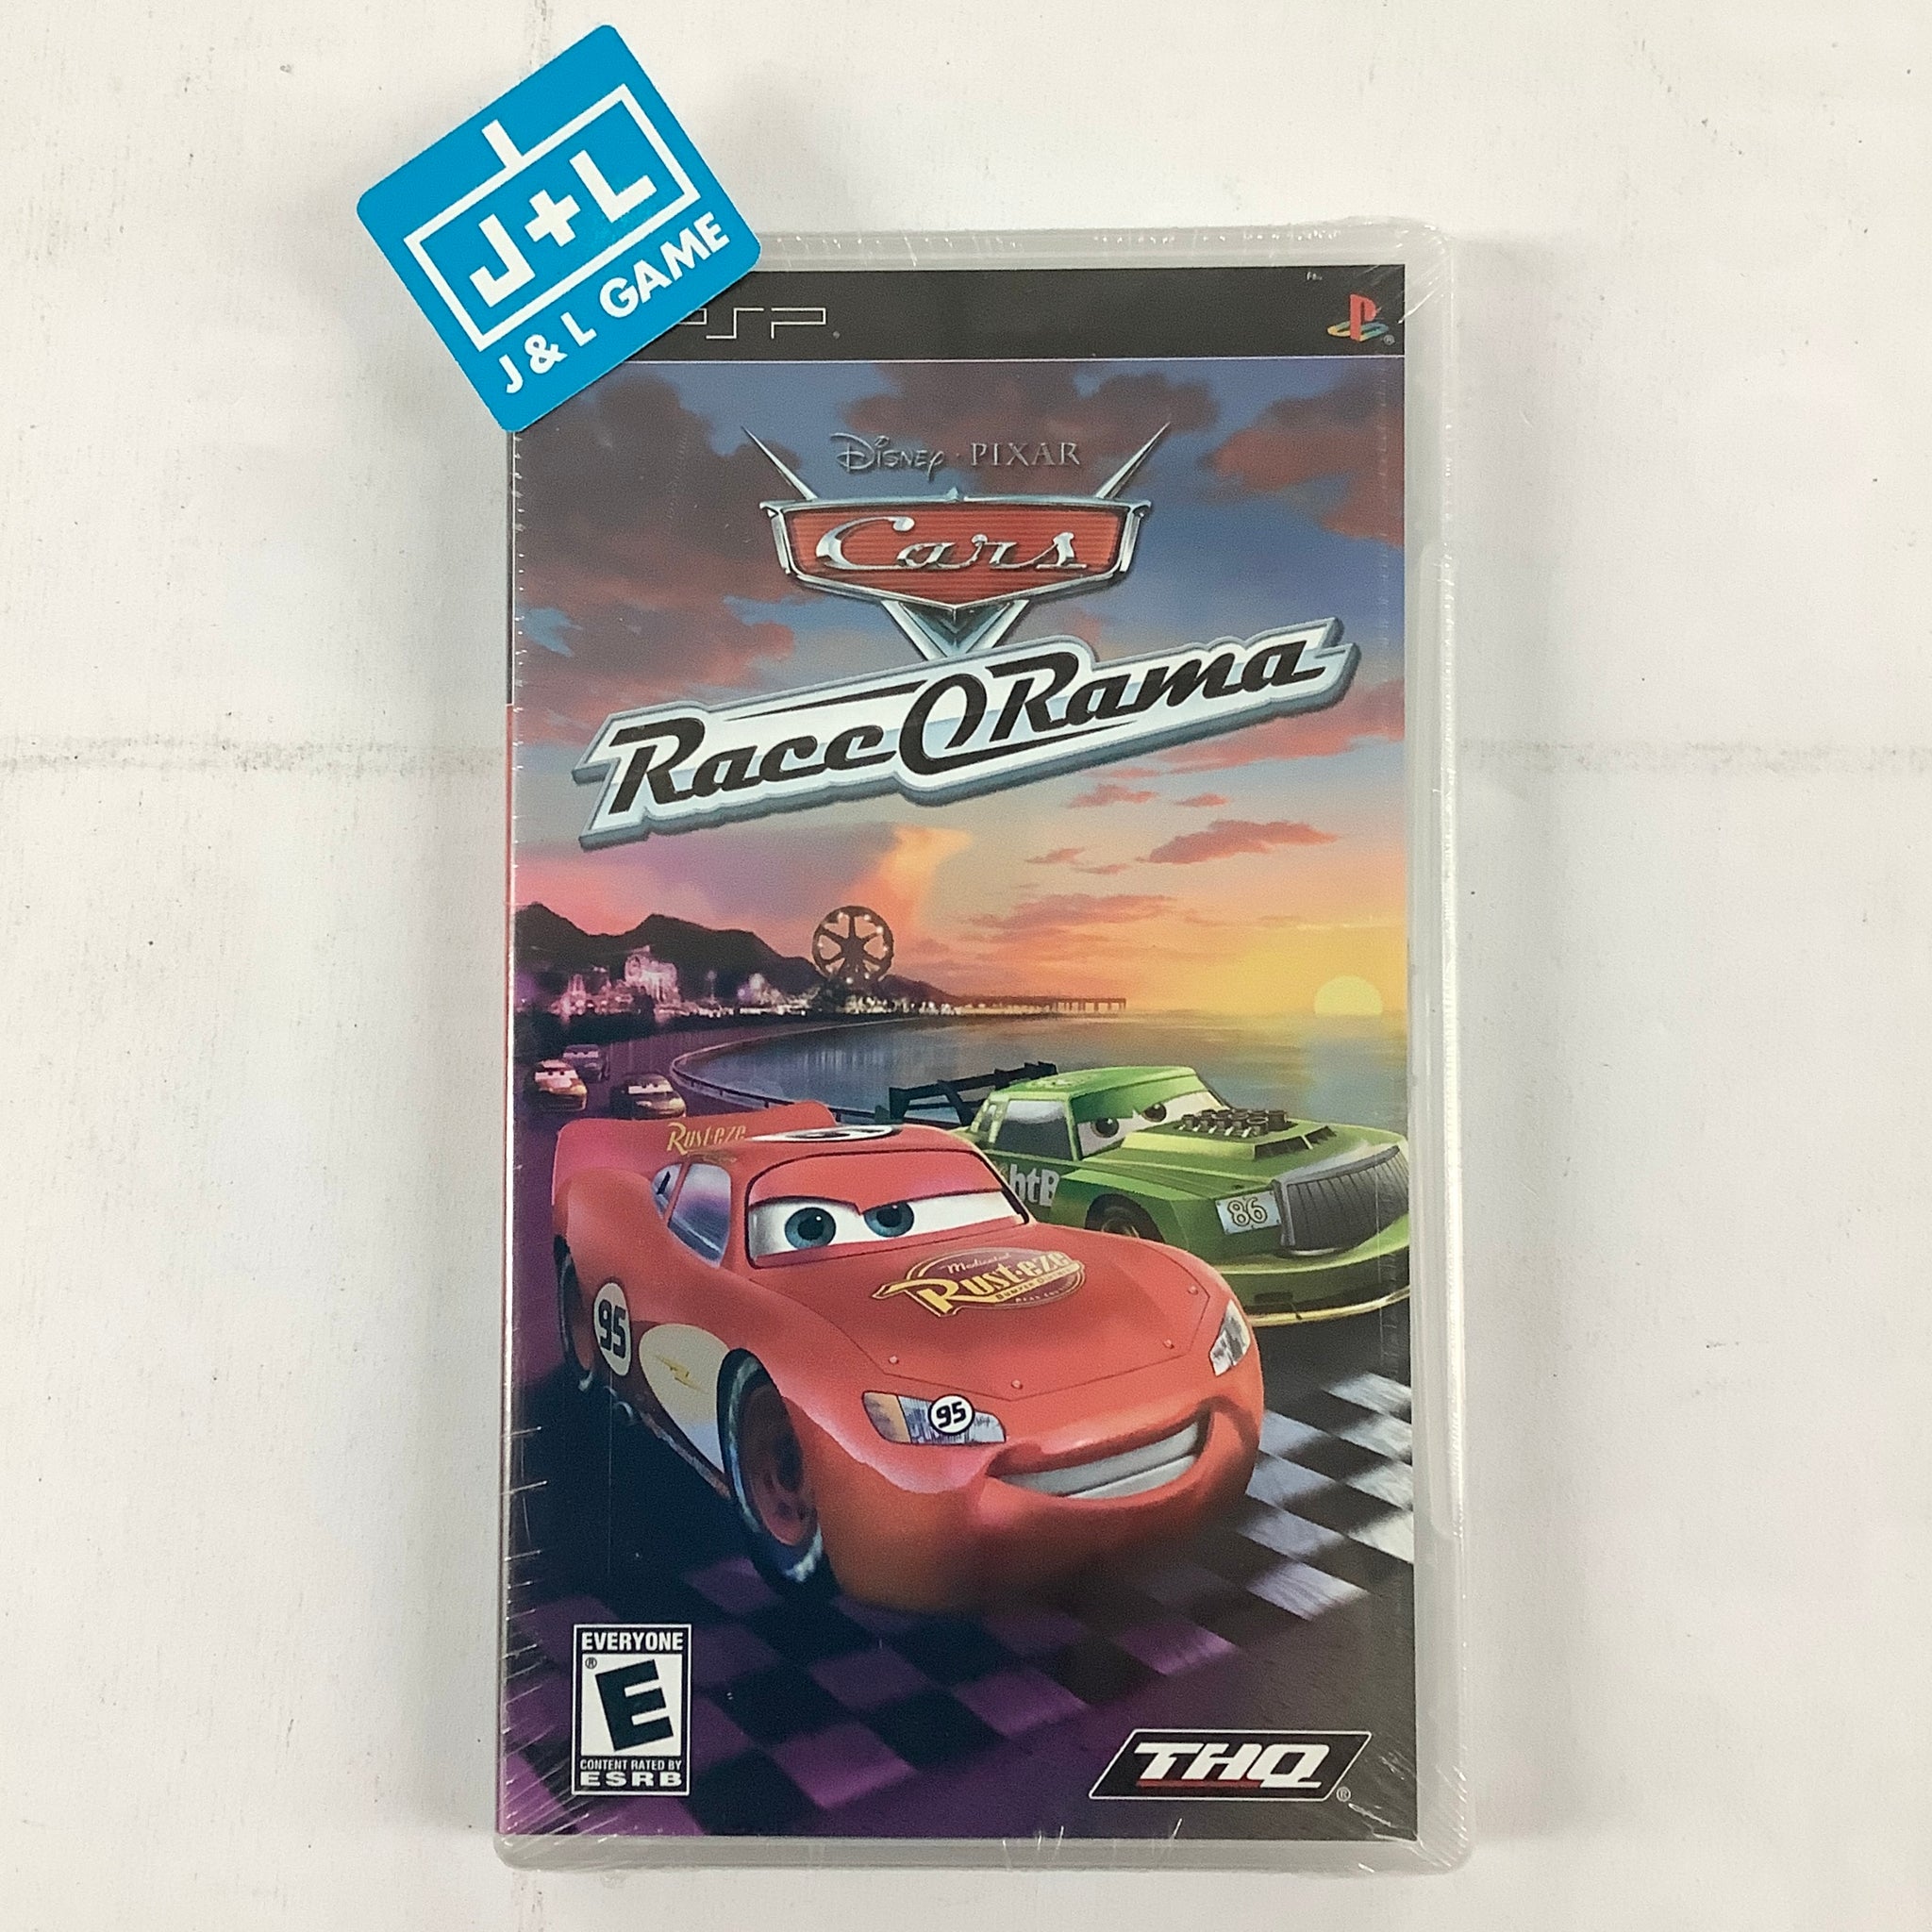 Preços baixos em Cars Race-o-Rama Car Racing Video Games